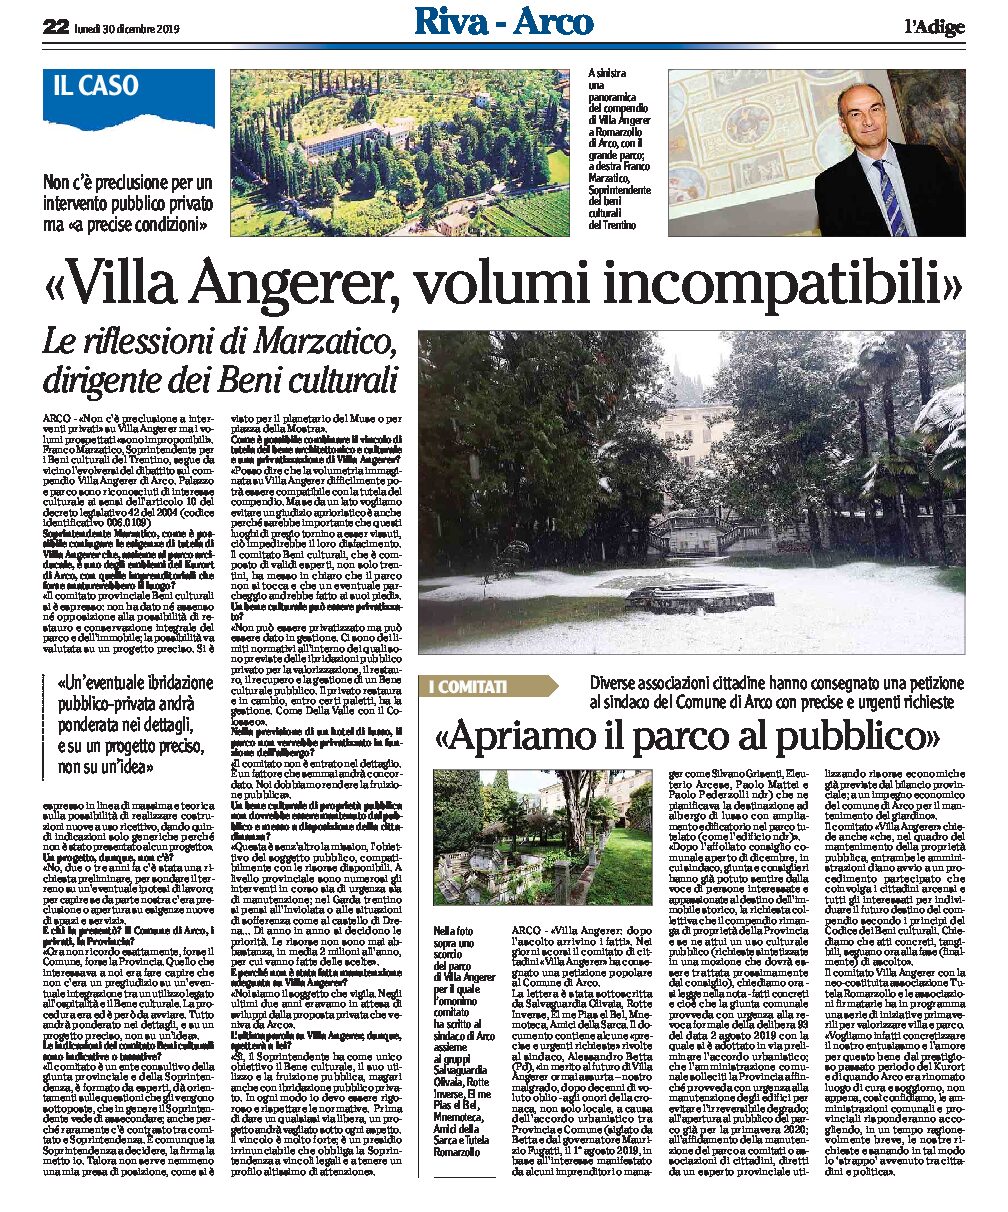 Arco, villa Angerer: intervista al soprintendente Marzatico “volumi improponibili”